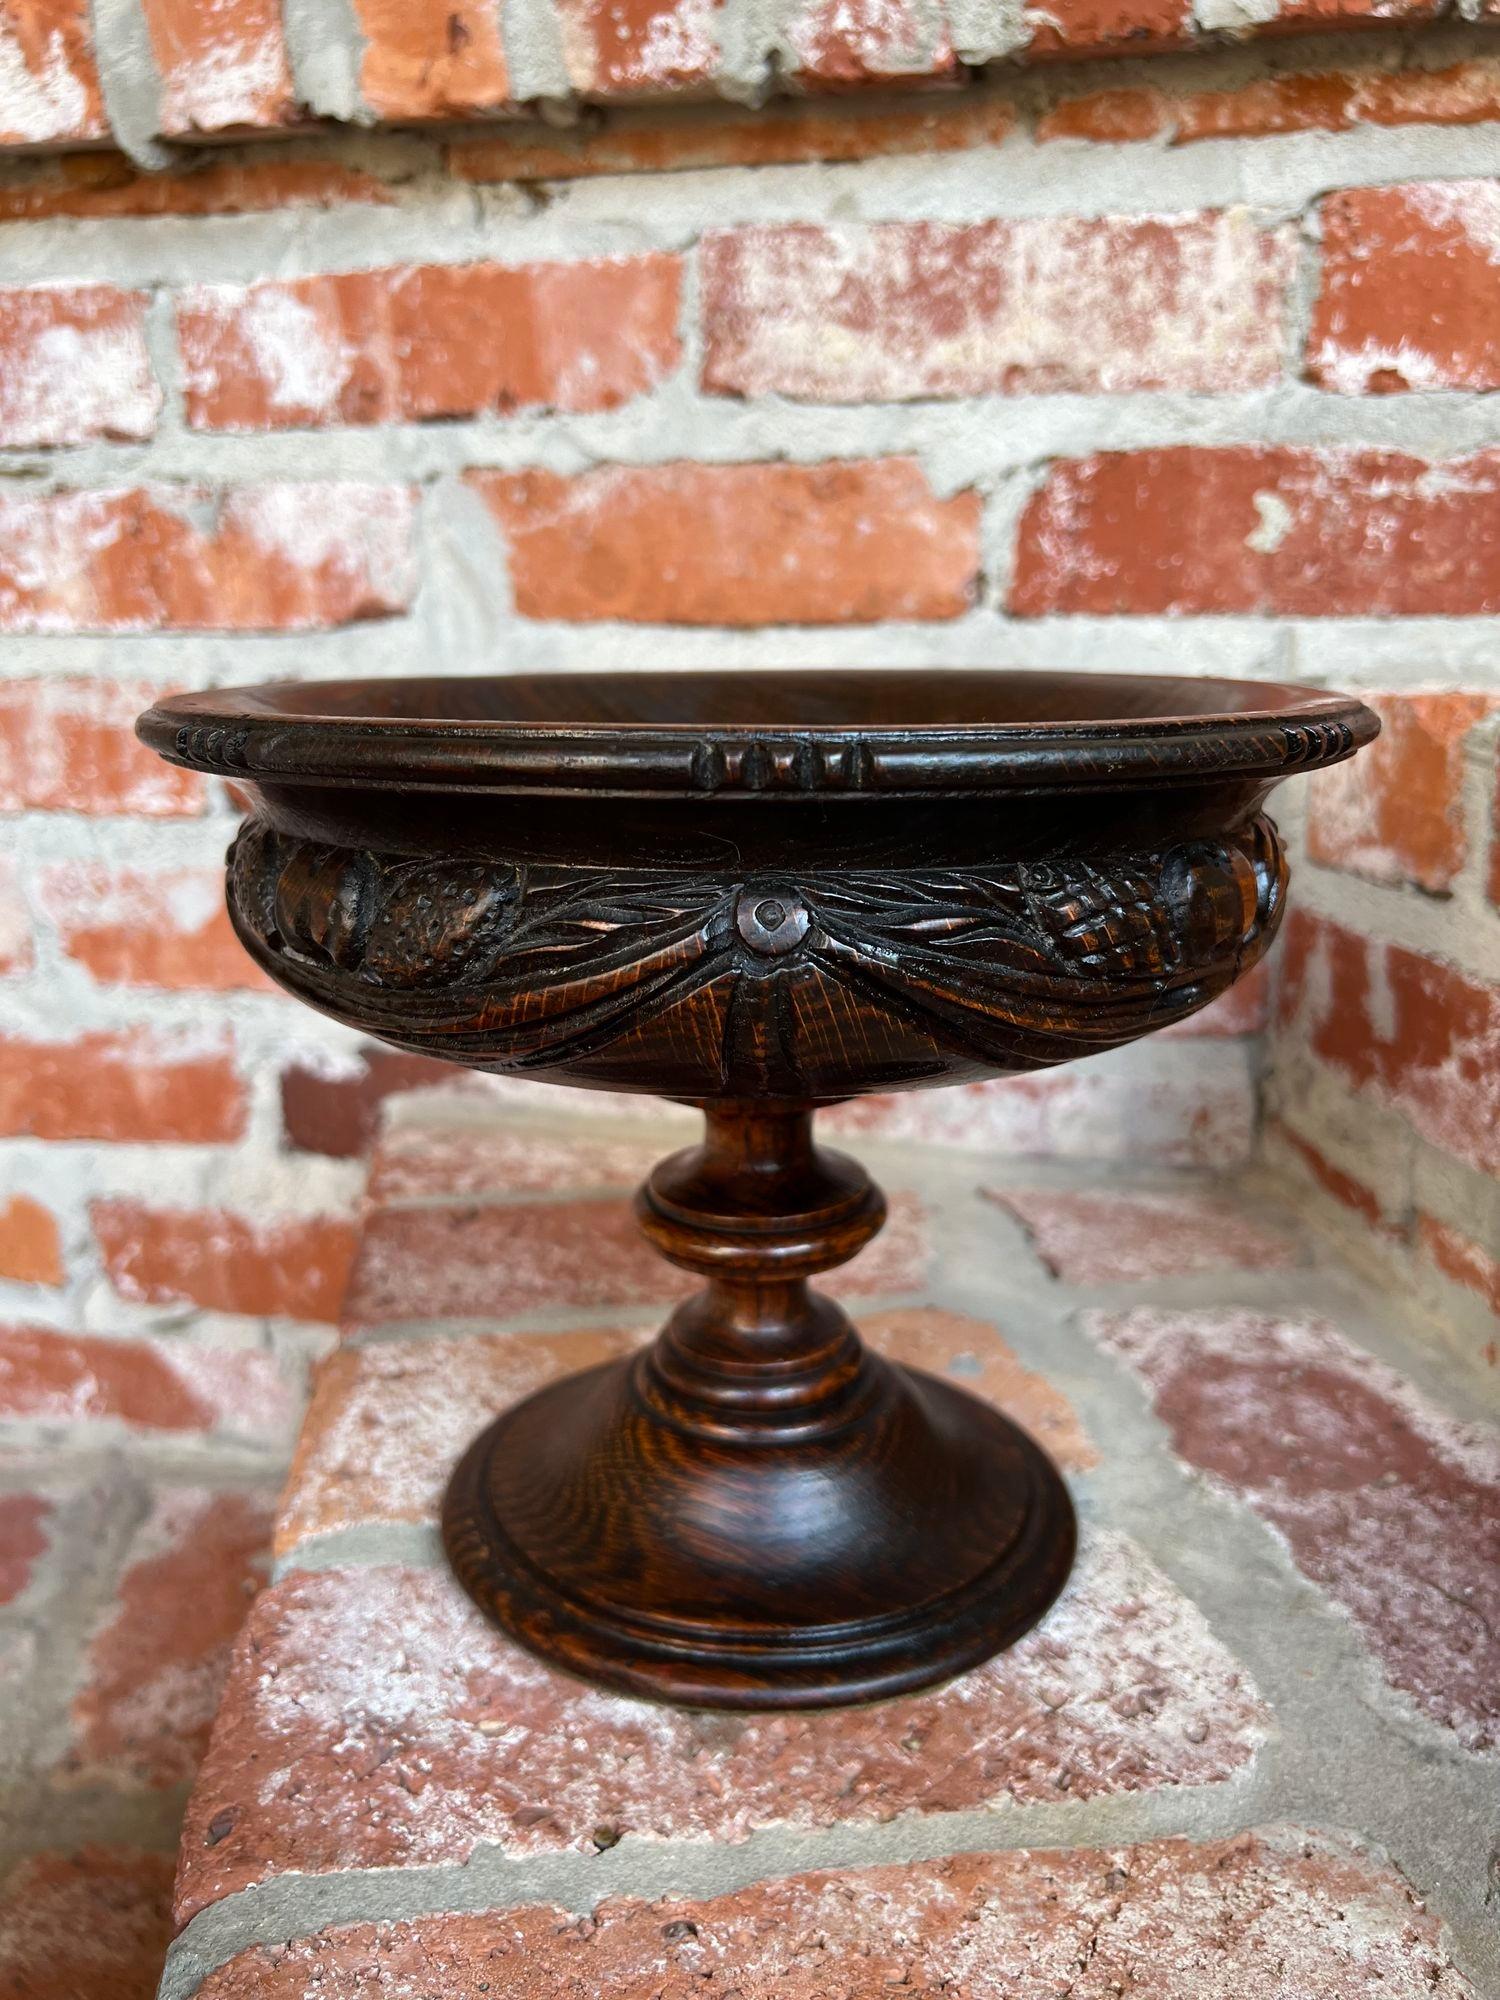 Antike englische geschnitzte dunkle Eiche Compote Pedestal Bowl Floral Dessert Stand.

Direkt aus England, ein wunderschöner antiker Kompott aus englischer Eiche. Die tiefe, geformte Schale hat schöne Schnitzereien auf der äußeren Schale, die eine